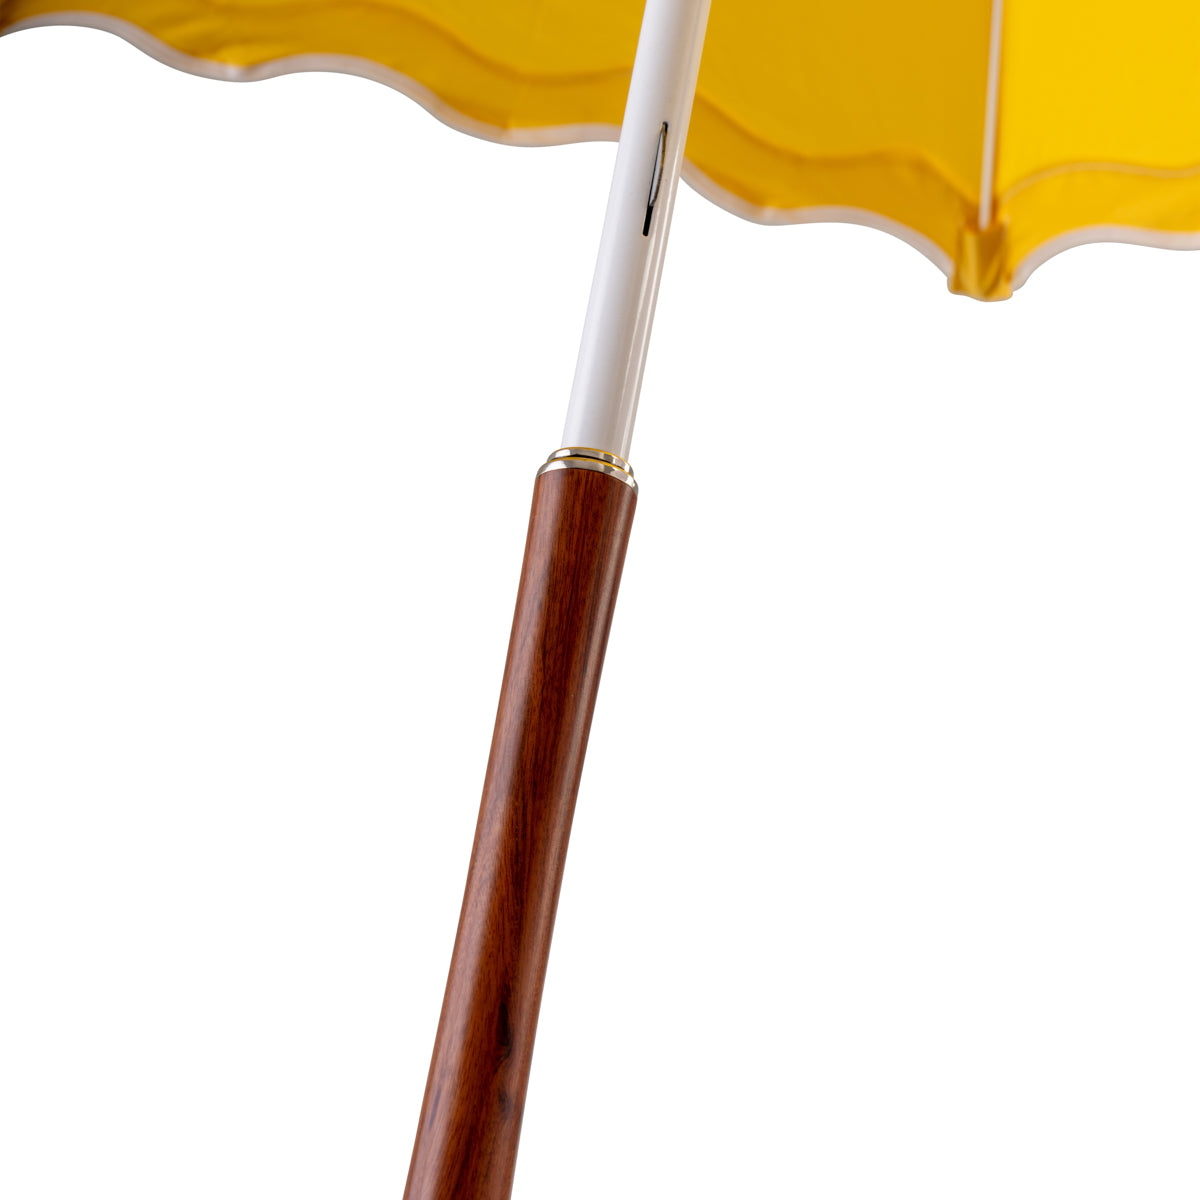 Rain Umbrella Riviera Green Business & Pleasure 